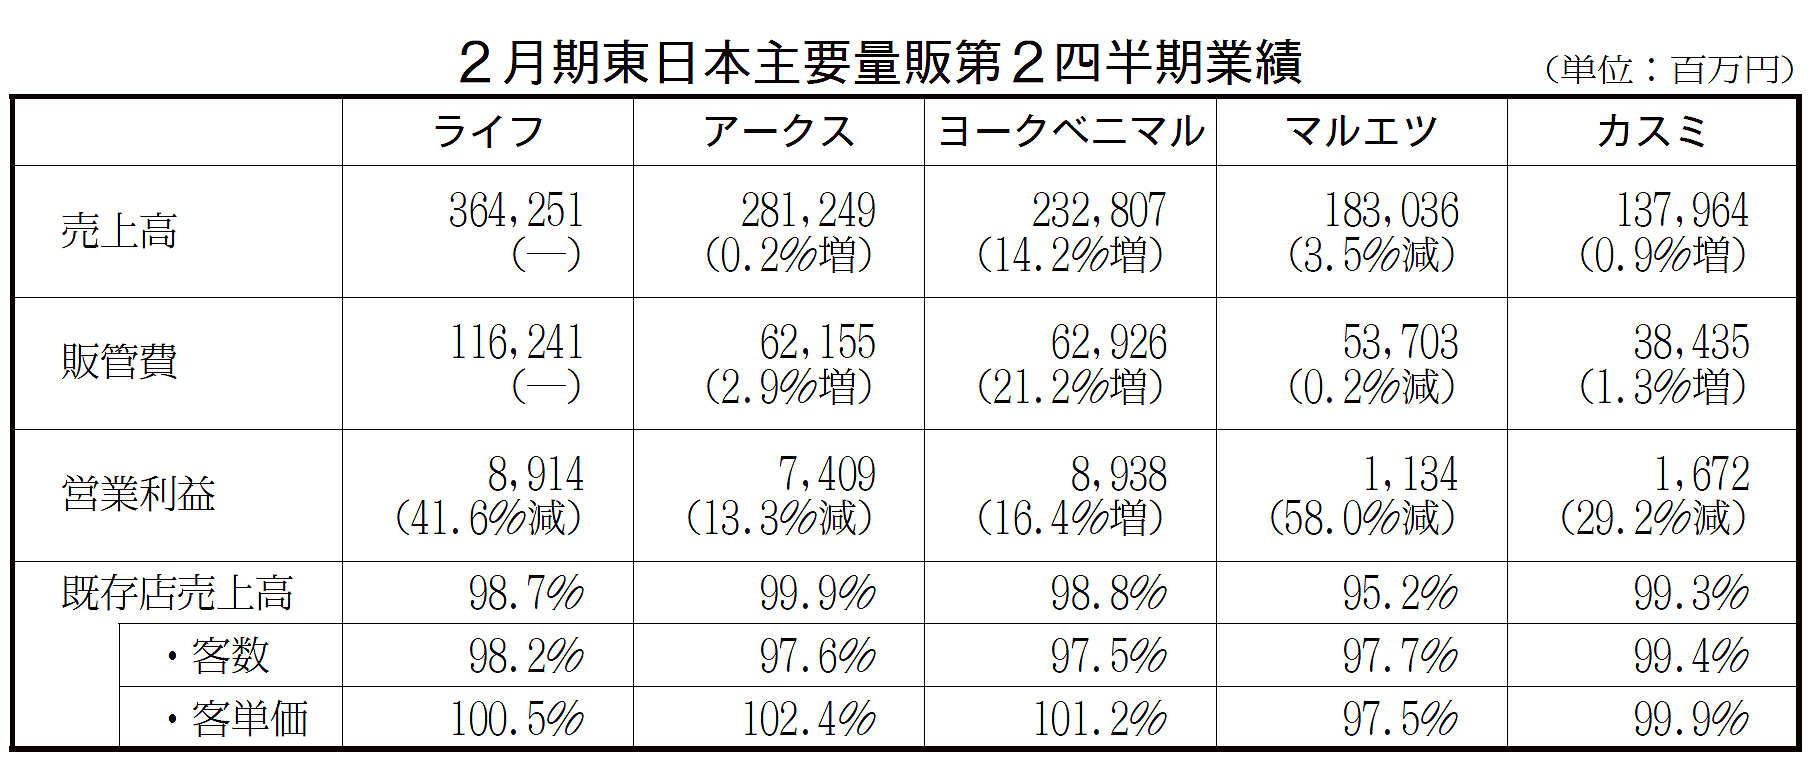 2月期東日本主要量販第2四半期業績